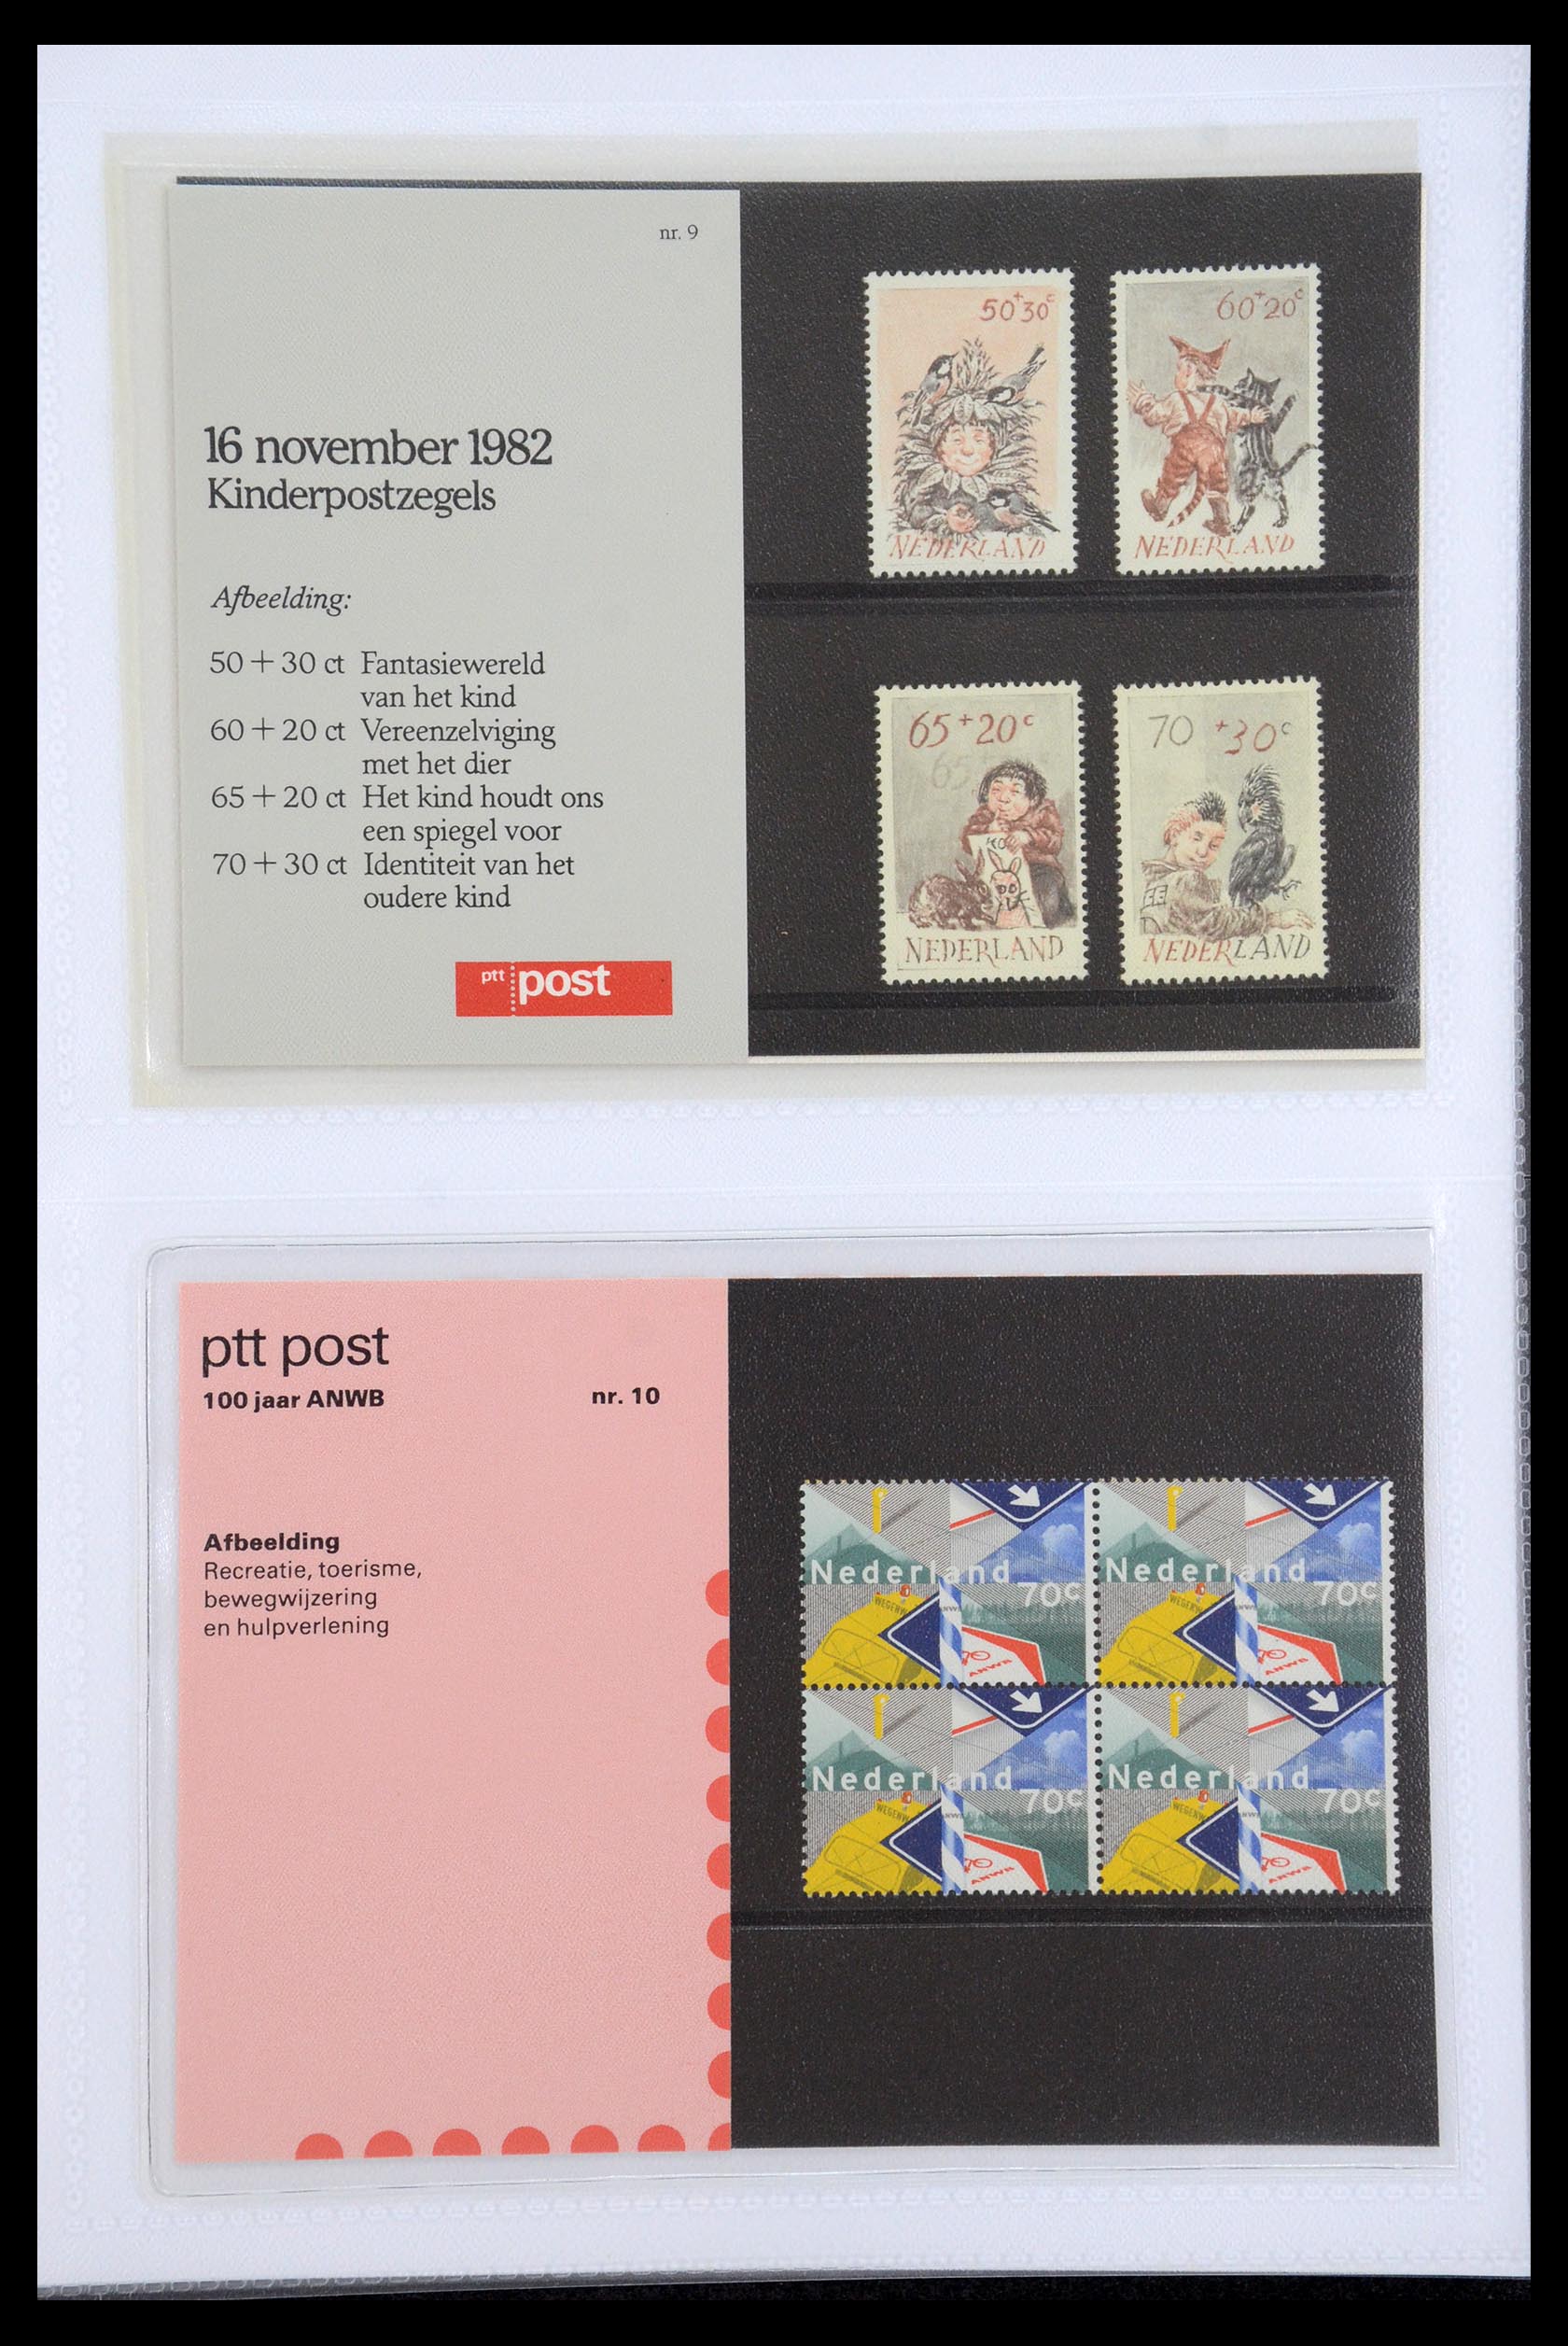 35947 005 - Stamp Collection 35947 Netherlands PTT presentation packs 1982-2019!